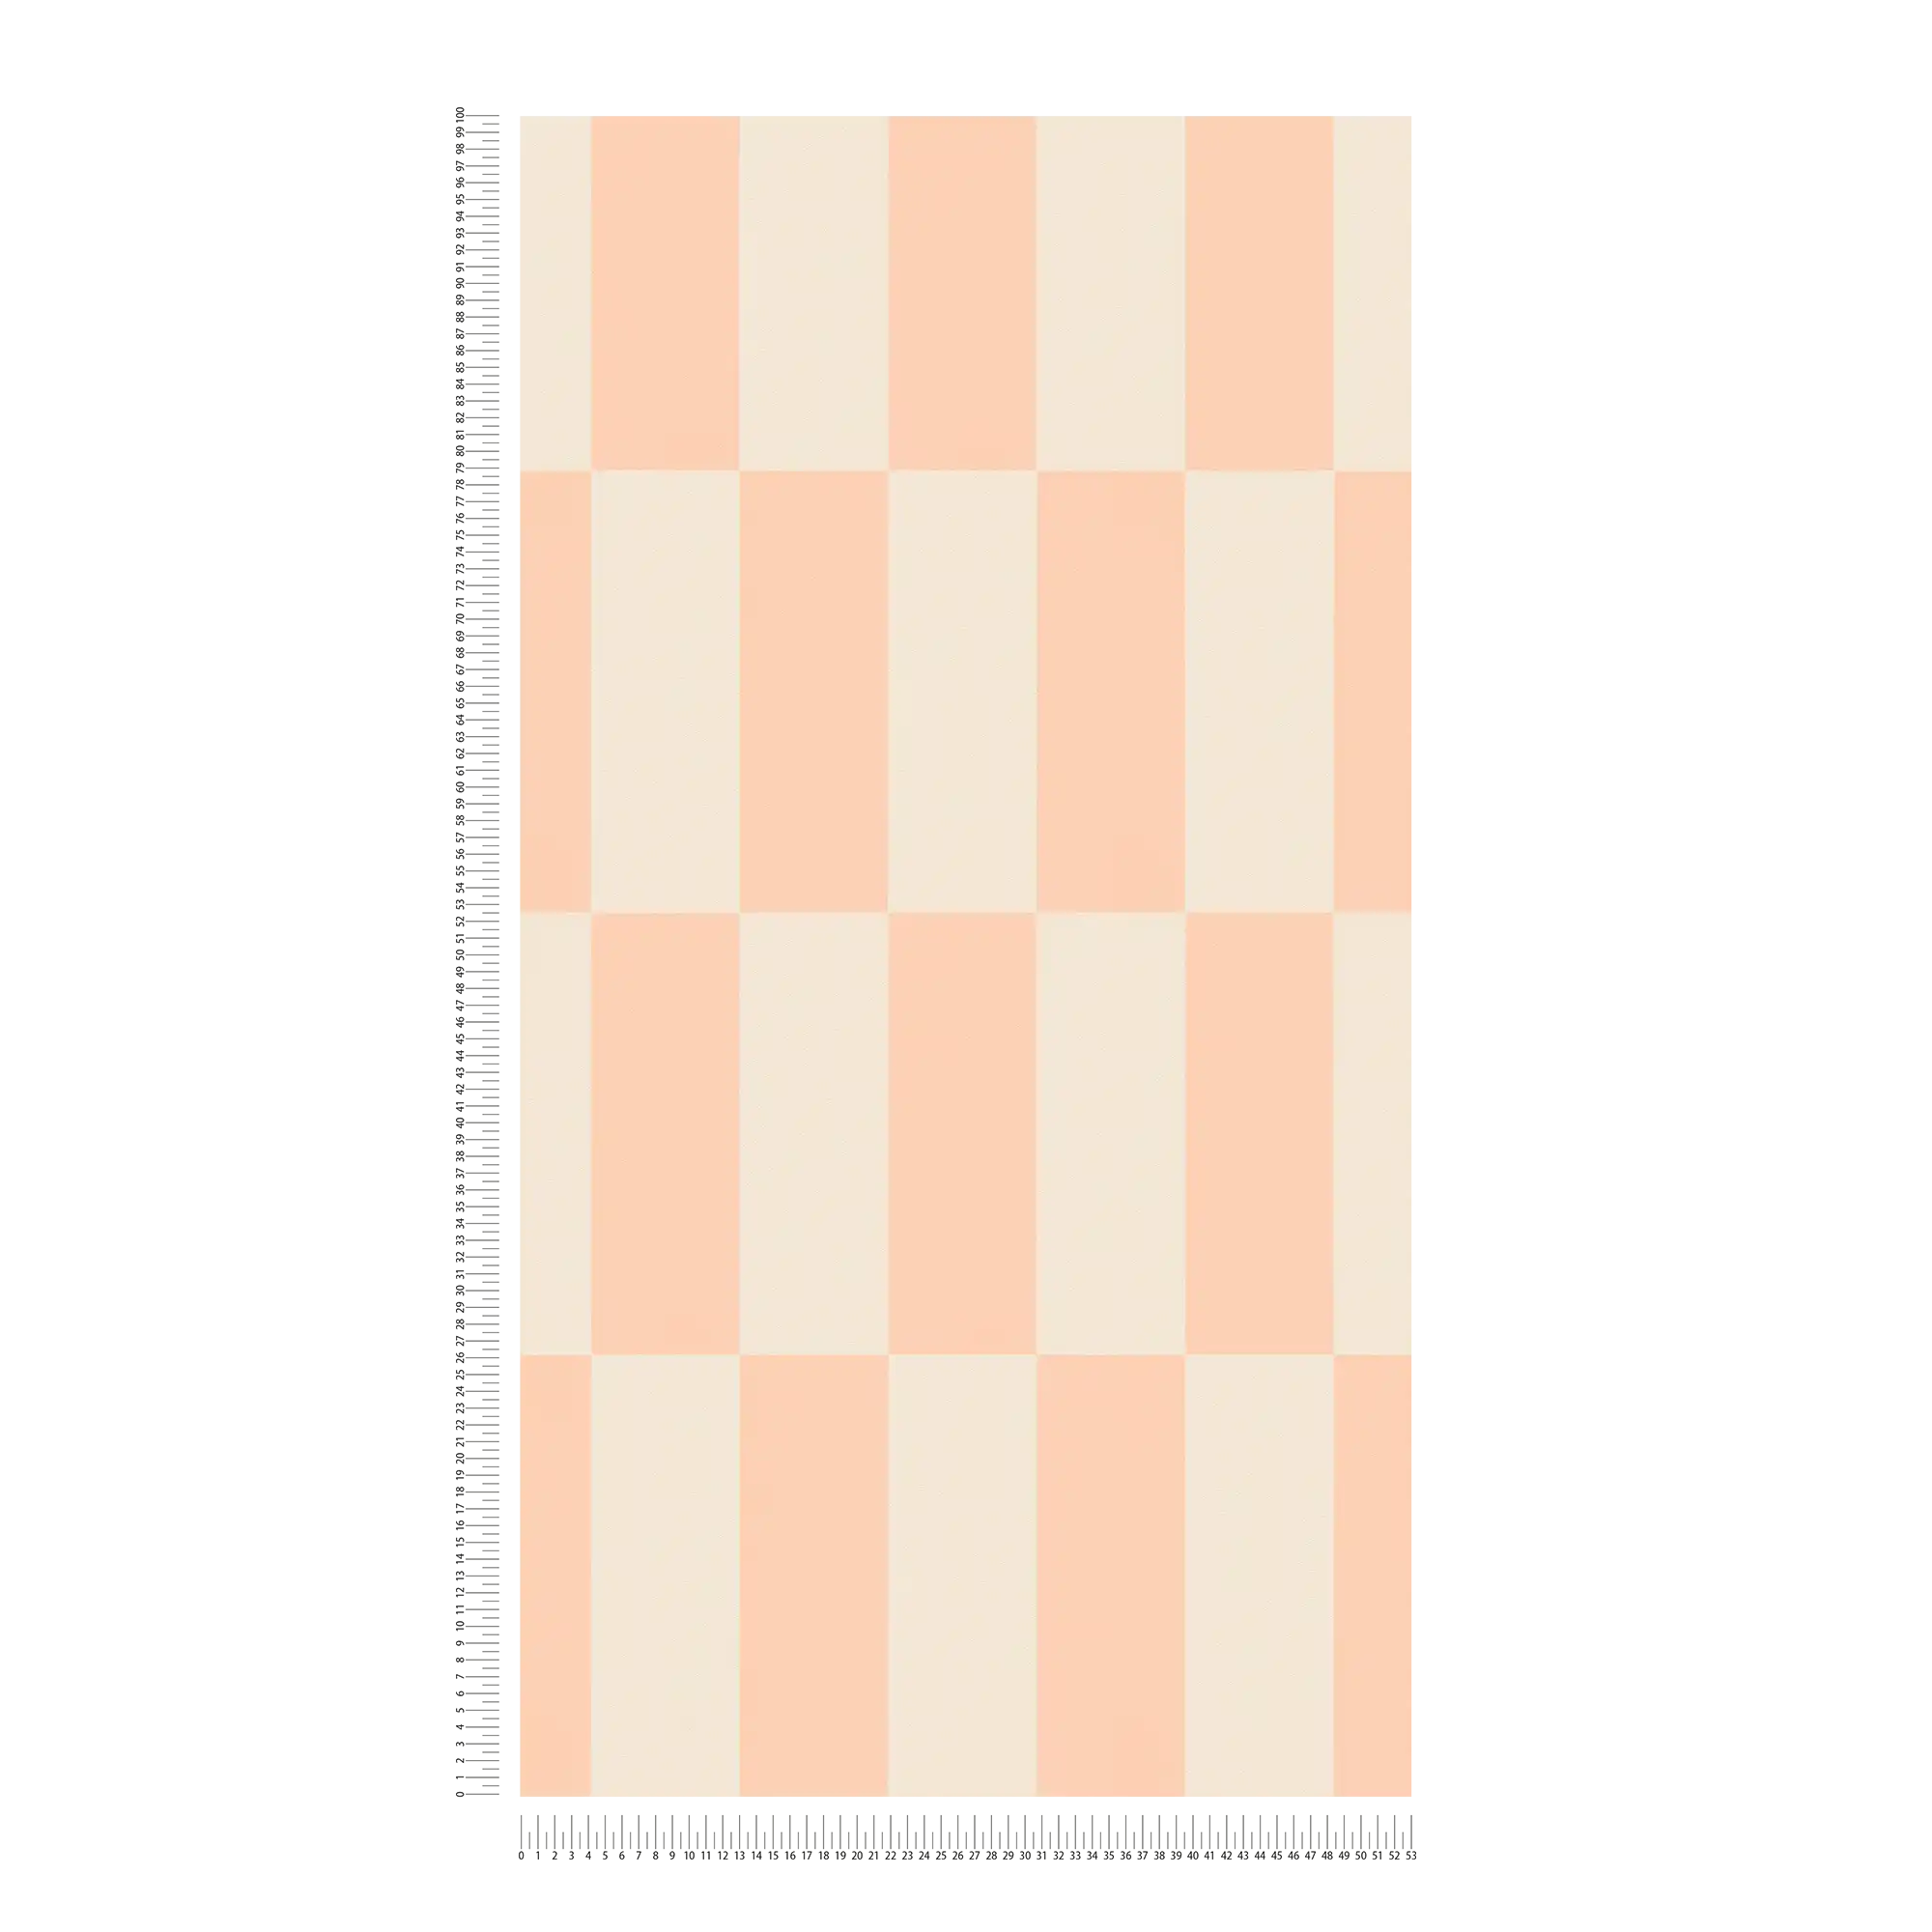             Vliesbehang met grafisch rechthoekpatroon - crème, roze
        